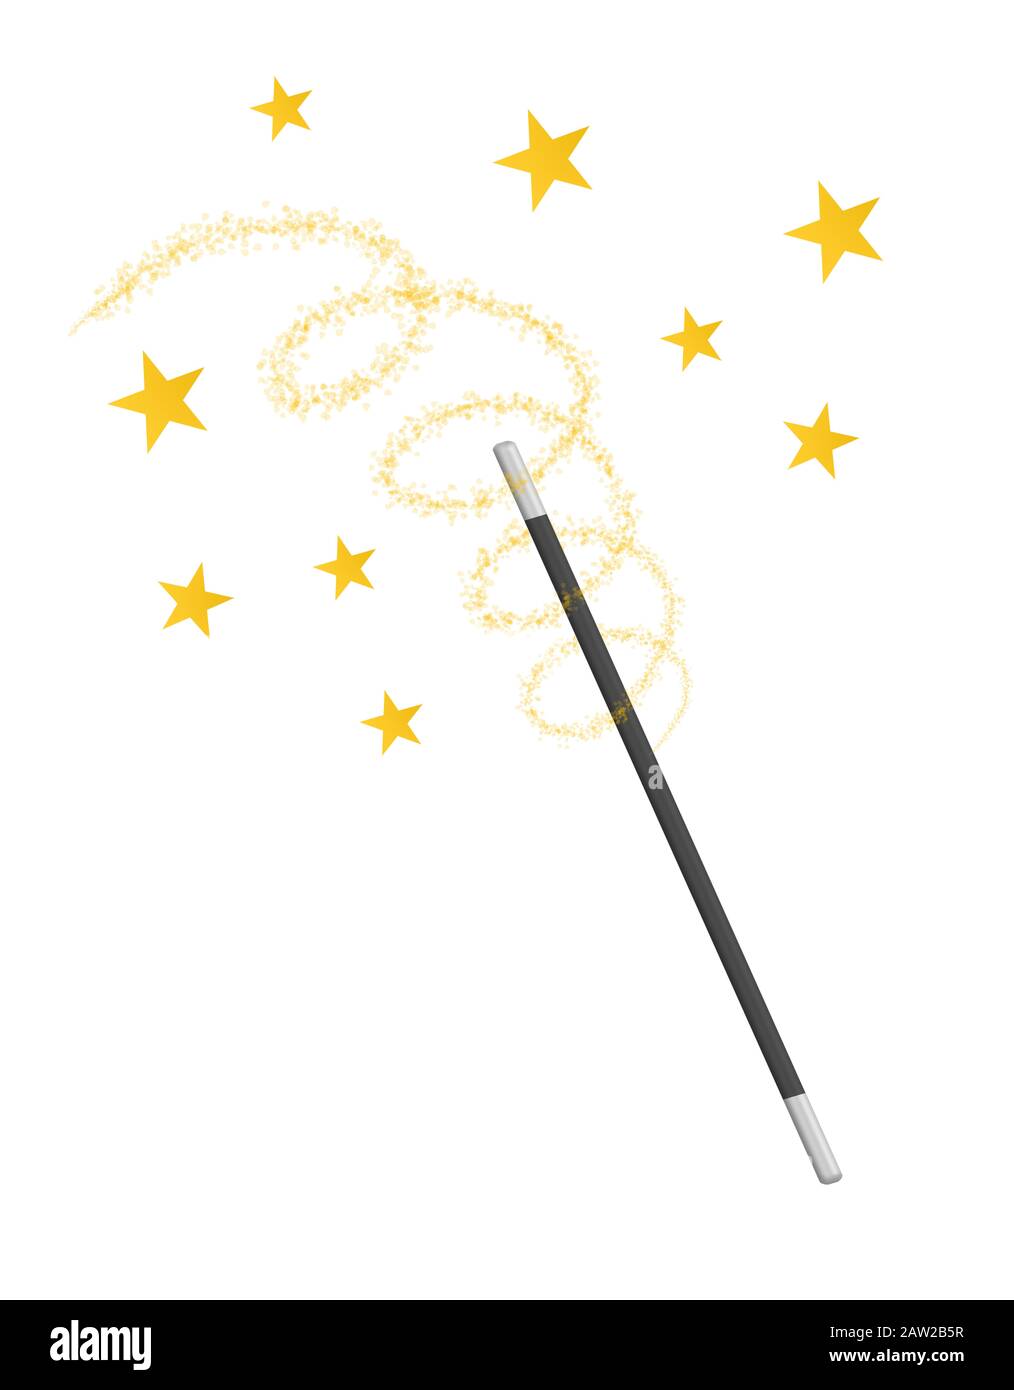 waving magic wand isolated on white background Stock Photo